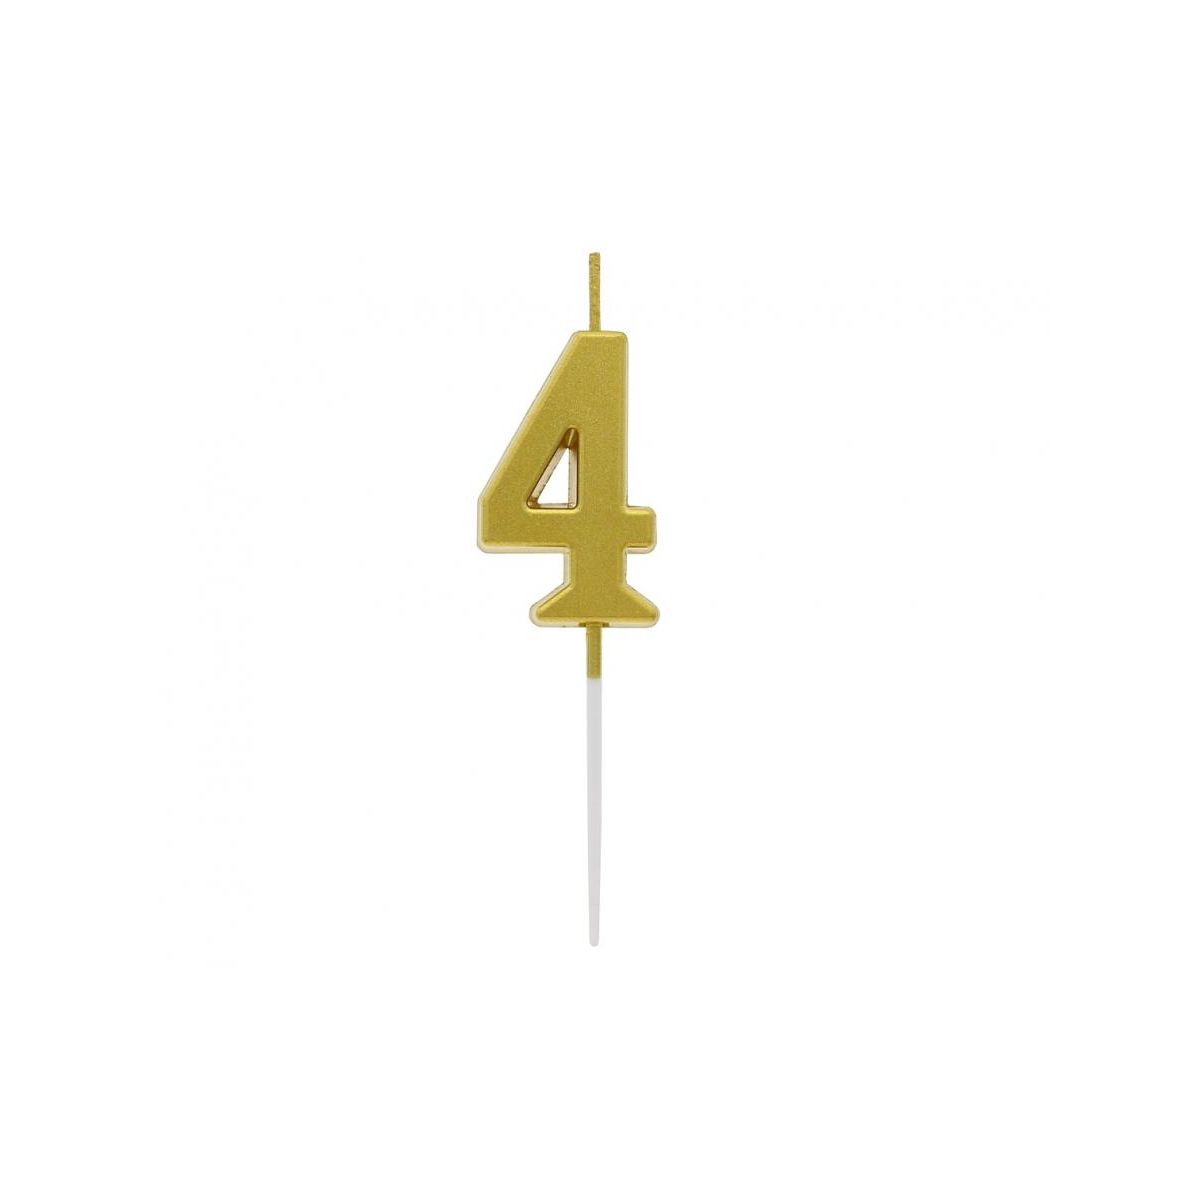 Świeczka urodzinowa piker B&C cyferka 4, metaliczna złota, 9.5x2.3 cm Godan (BH-SPZ4)